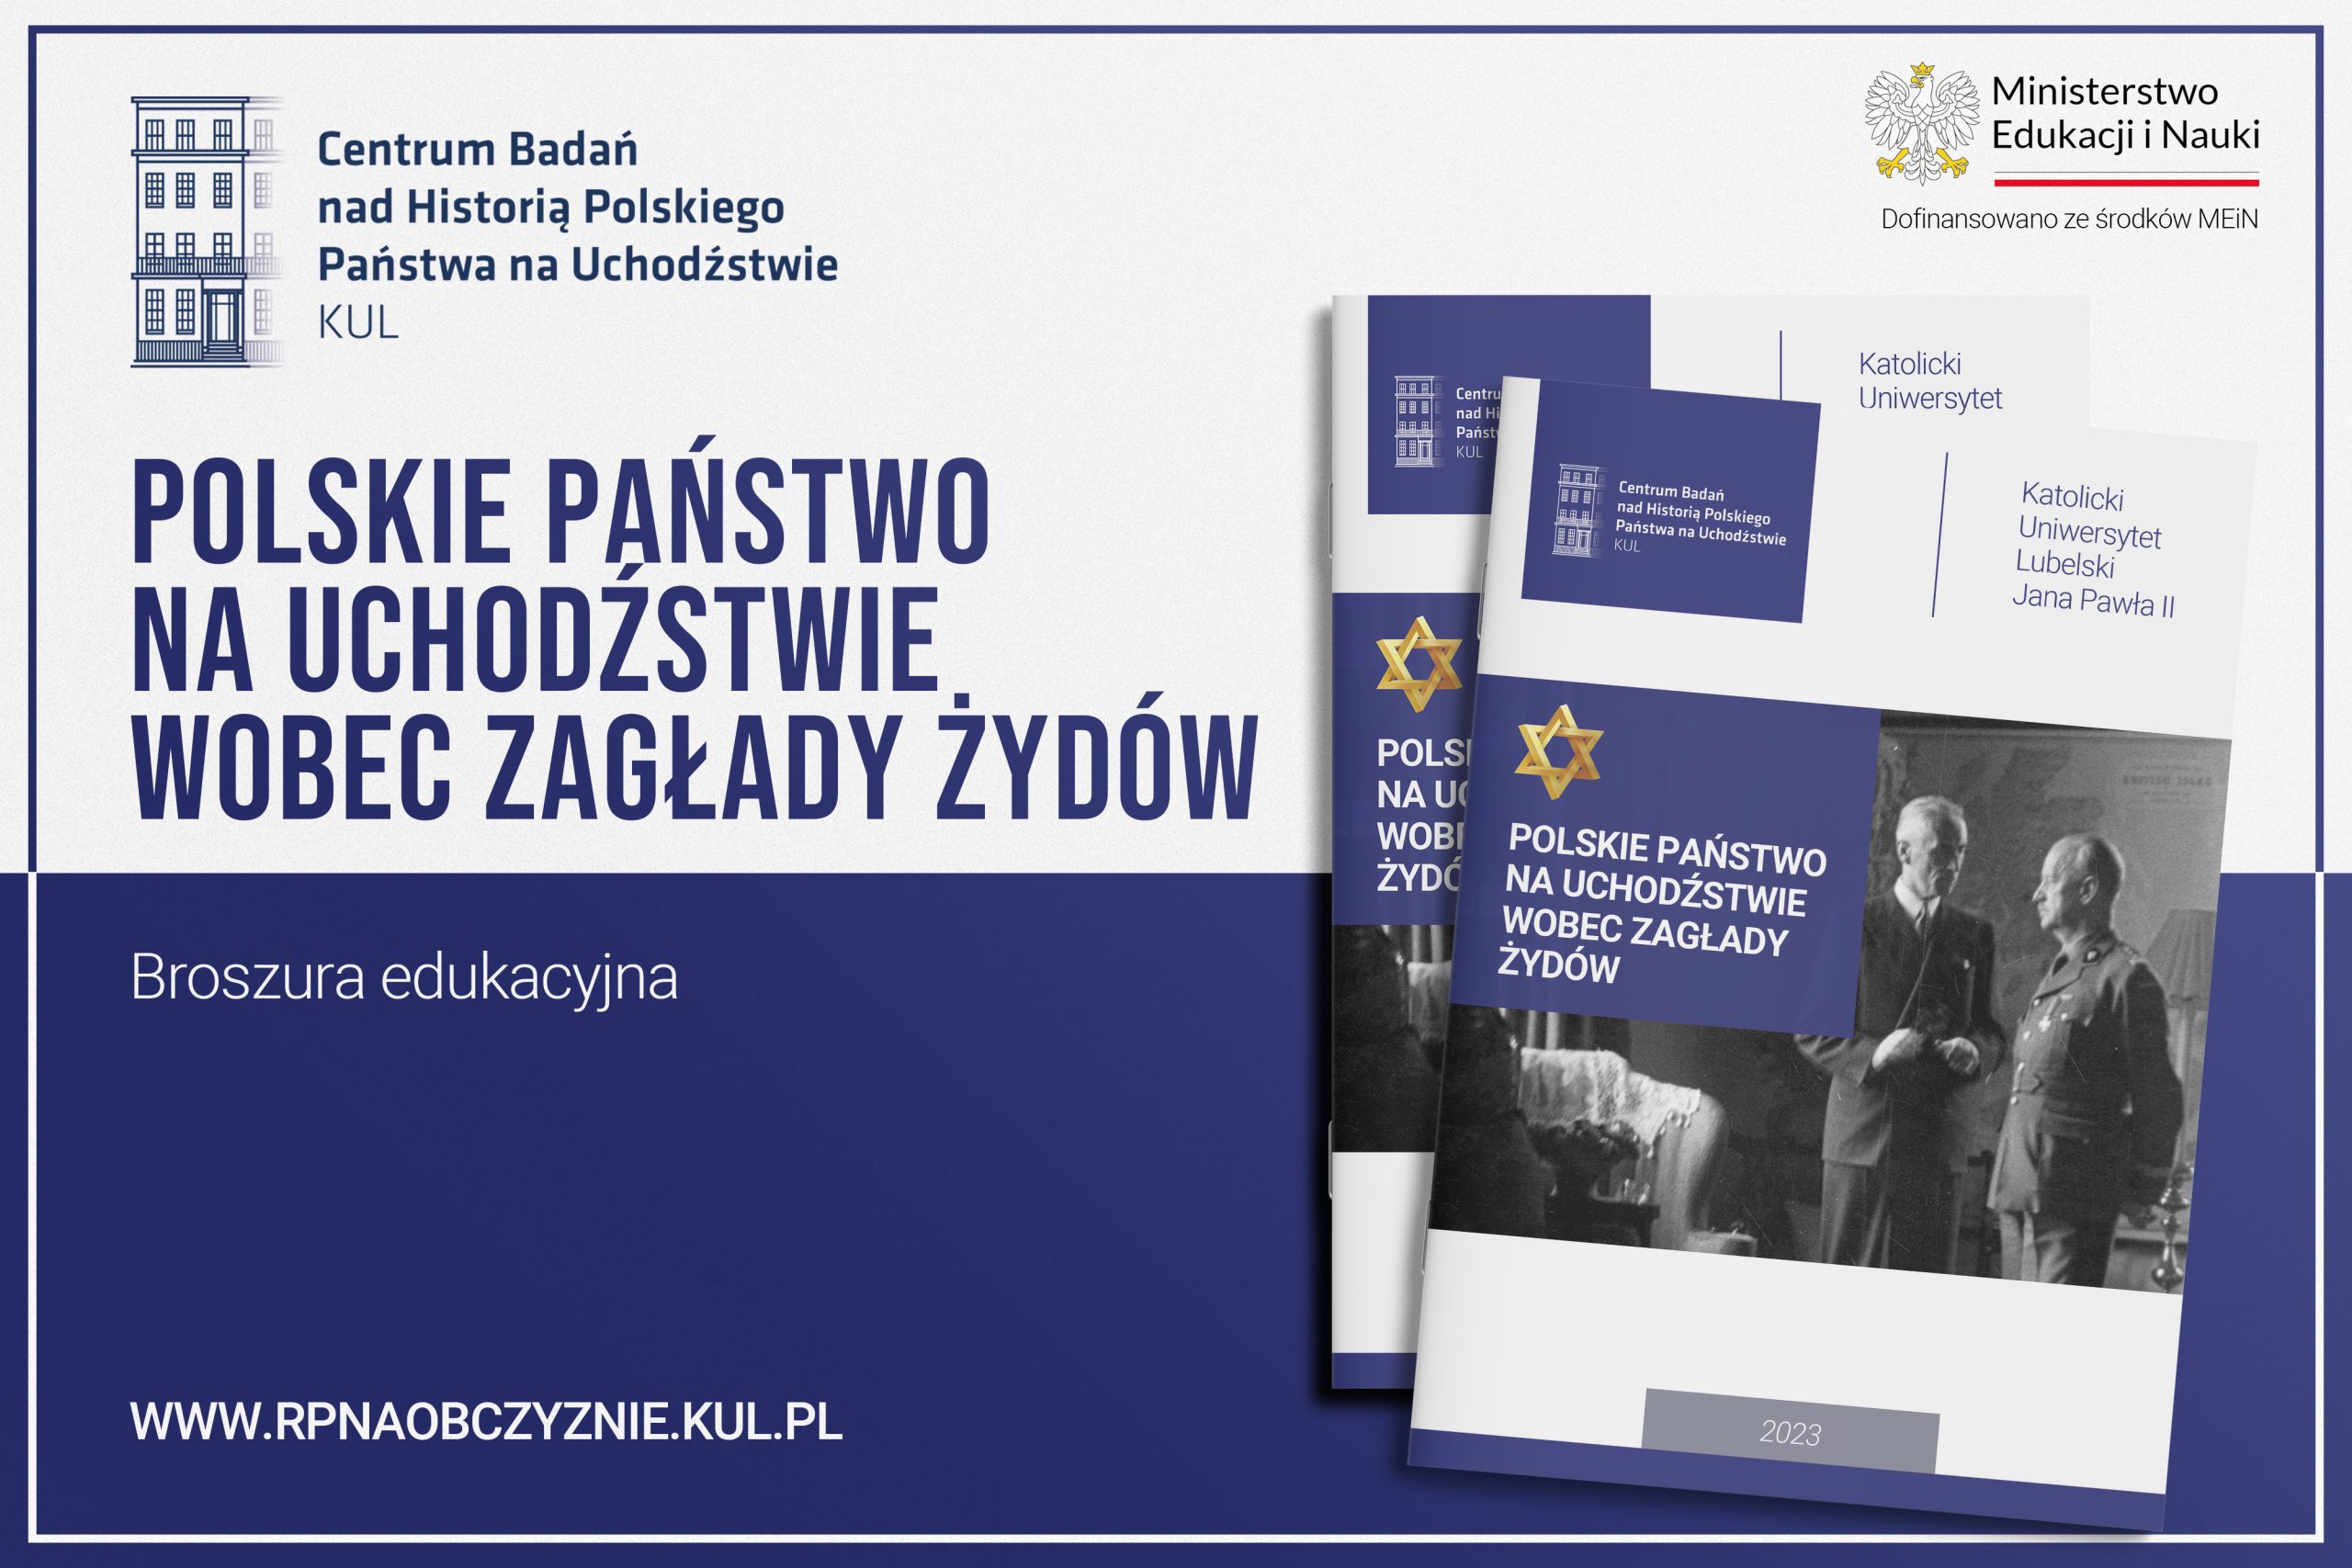 Już niebawem ukaże się broszura edukacyjna ,,Polskie Państwo na Uchodźstwie wobec Zagłady Żydów"